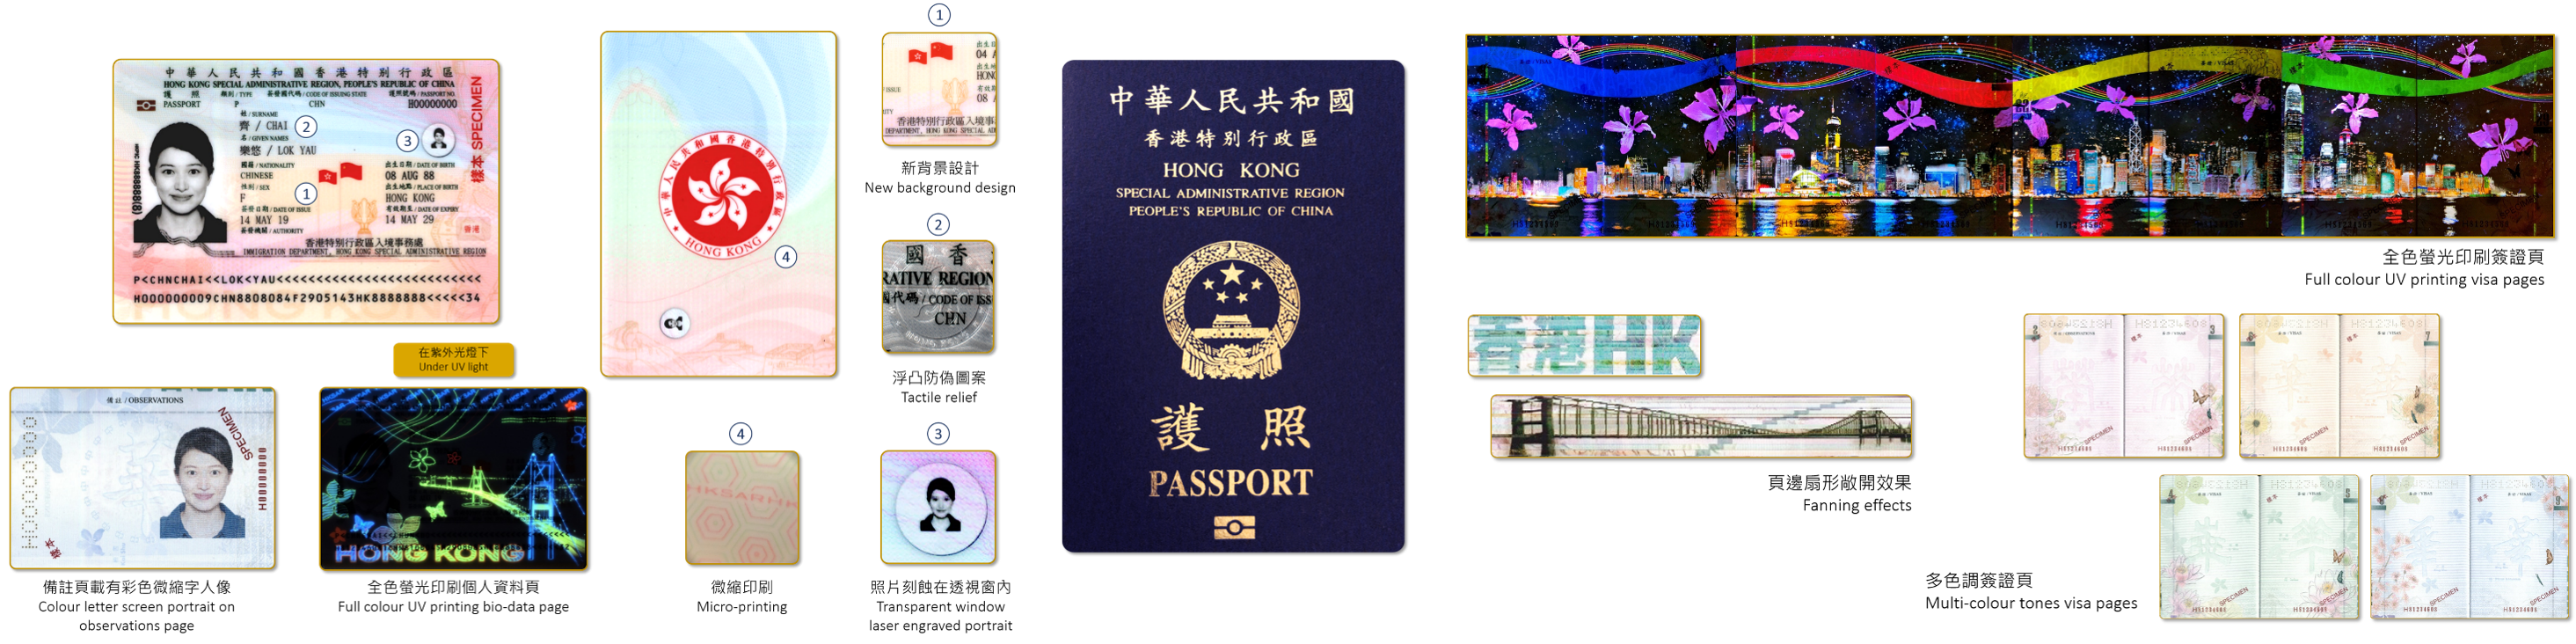 香港特区护照具备最先进的防伪特征，持证人可免签证入境或以落地签证方式到访全球168个国家和地区，当中超过100个为「一带一路」沿线国家。